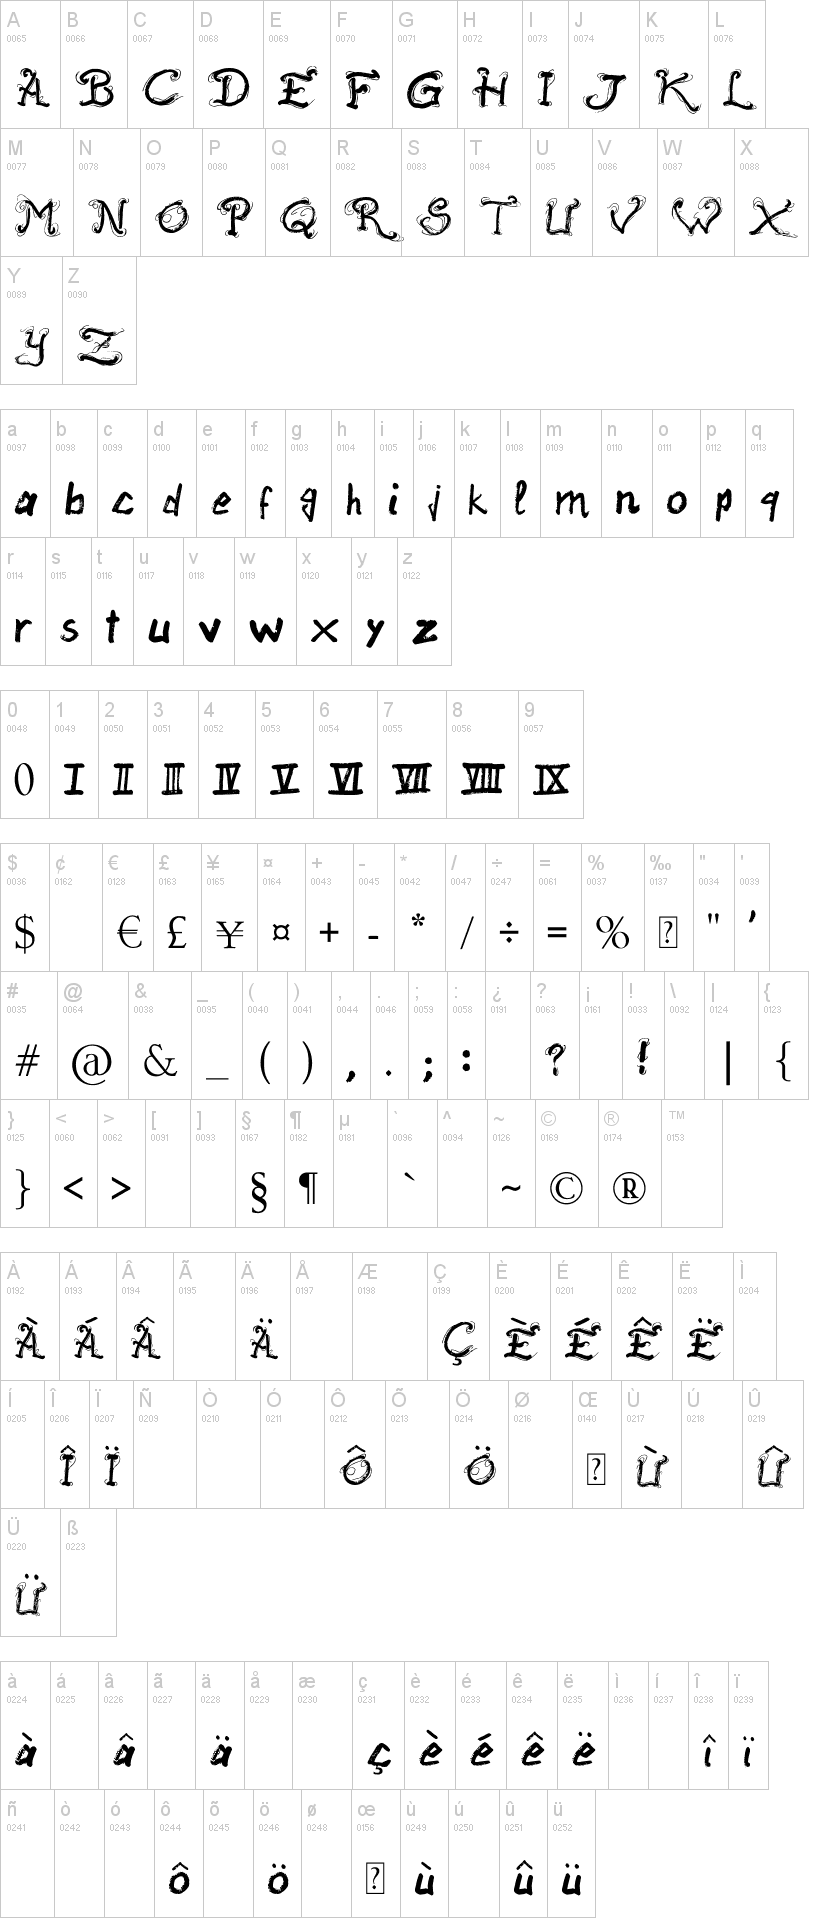 Raslani Ancient Script Font | Dafont.com